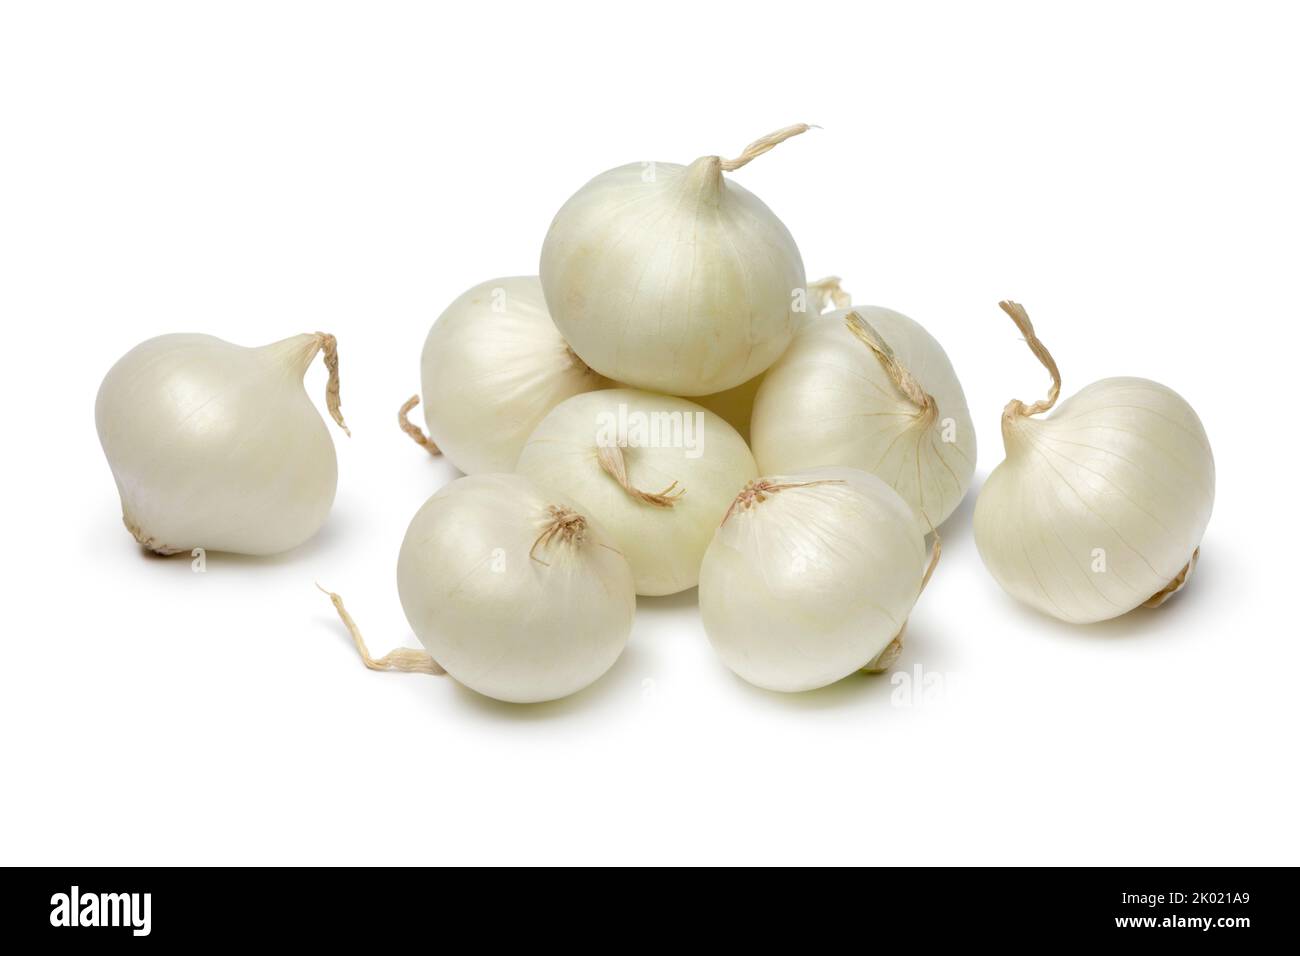 Tas d'oignons perlés frais et crus, isolés sur fond blanc Banque D'Images